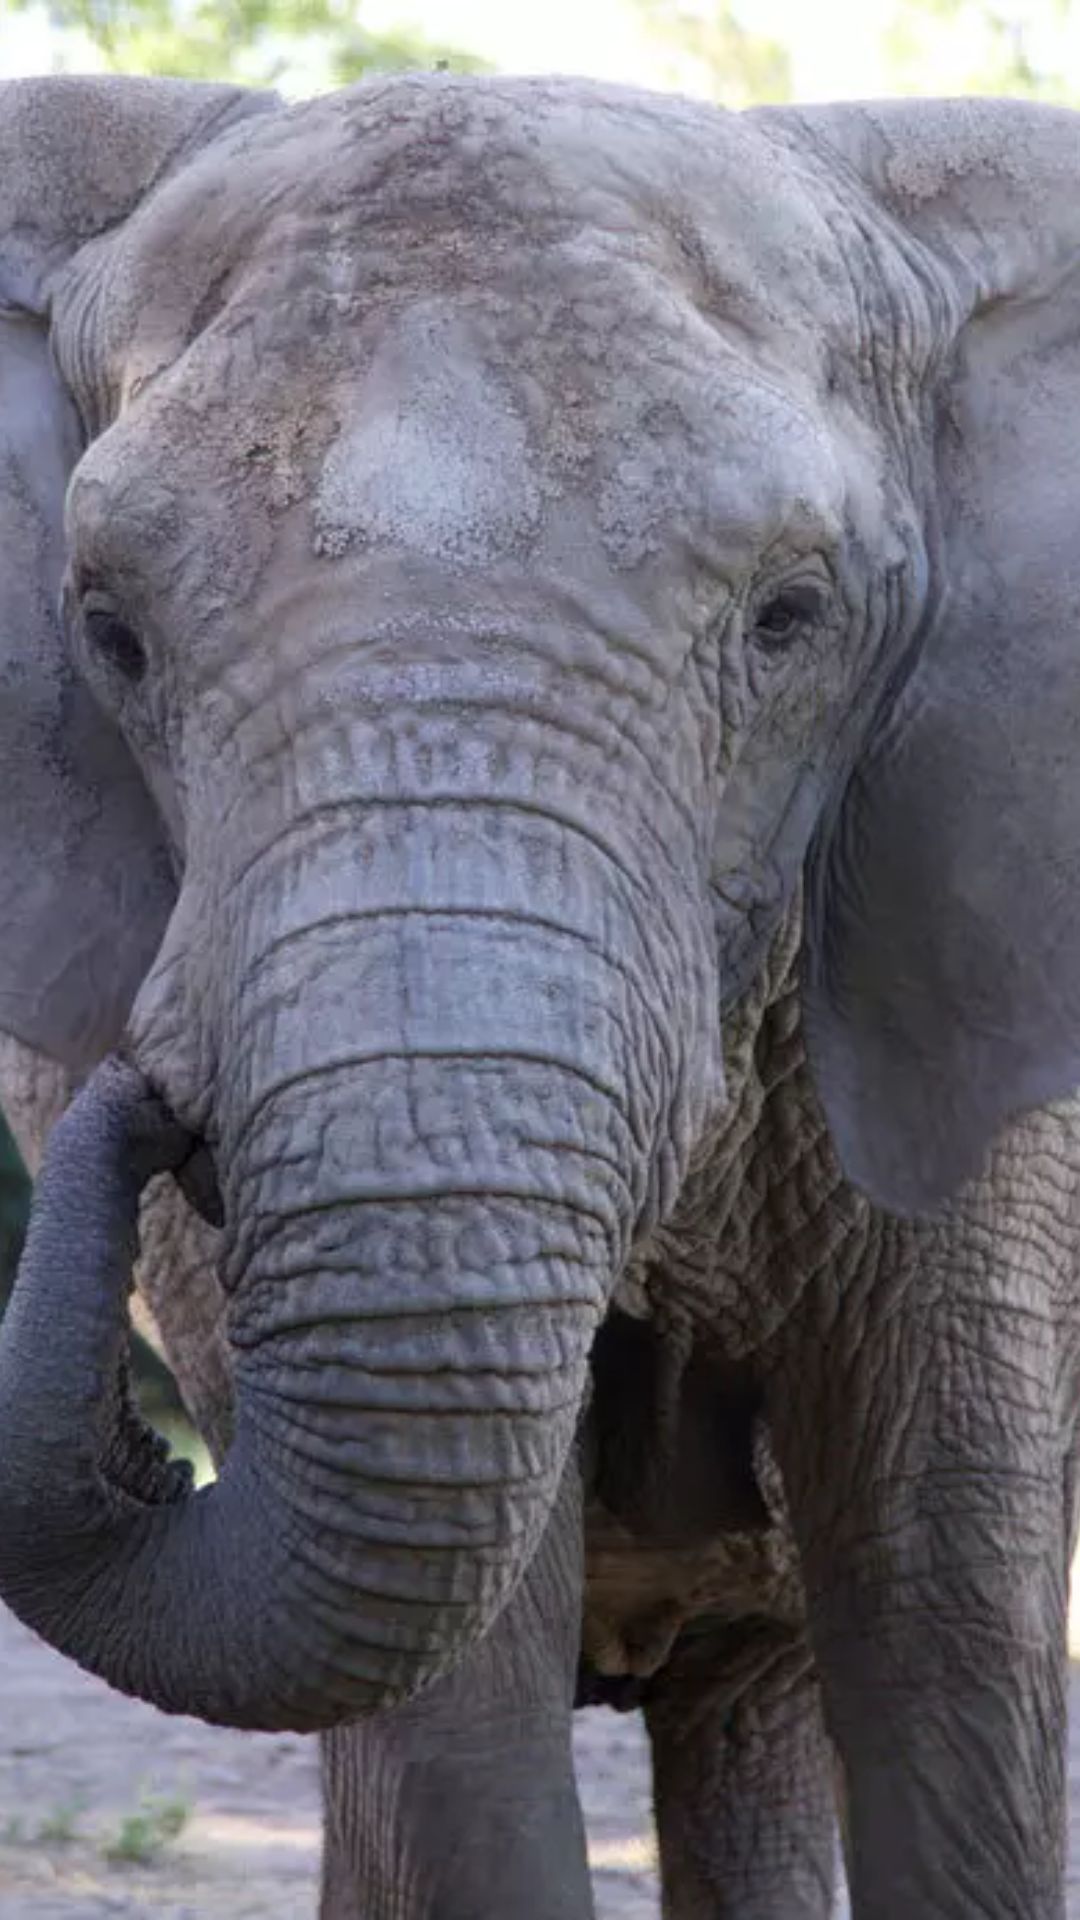 ये है दुनिया का सबसे बड़ा हाथी, वजन है 10 हजार किलो से भी ज्यादा